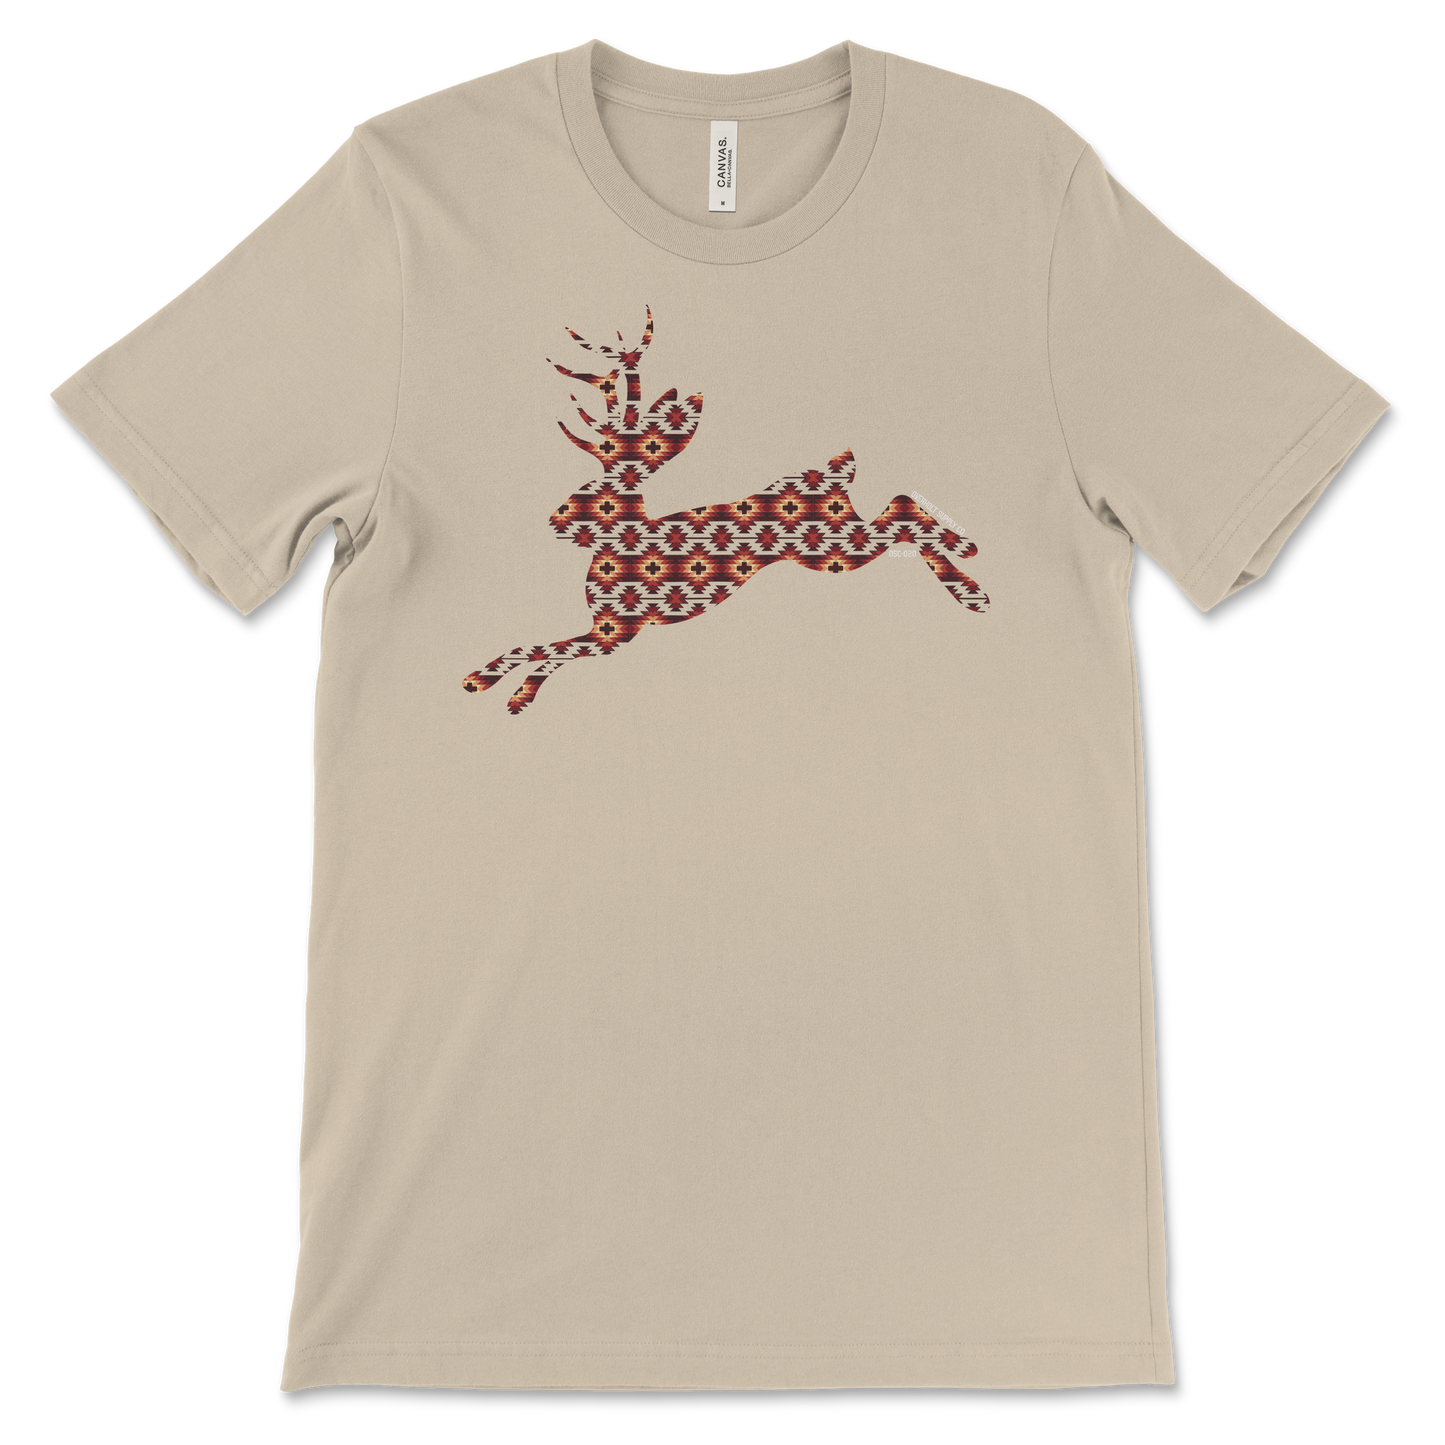 OSC-020 Texas Critter Jackelope T-Shirt